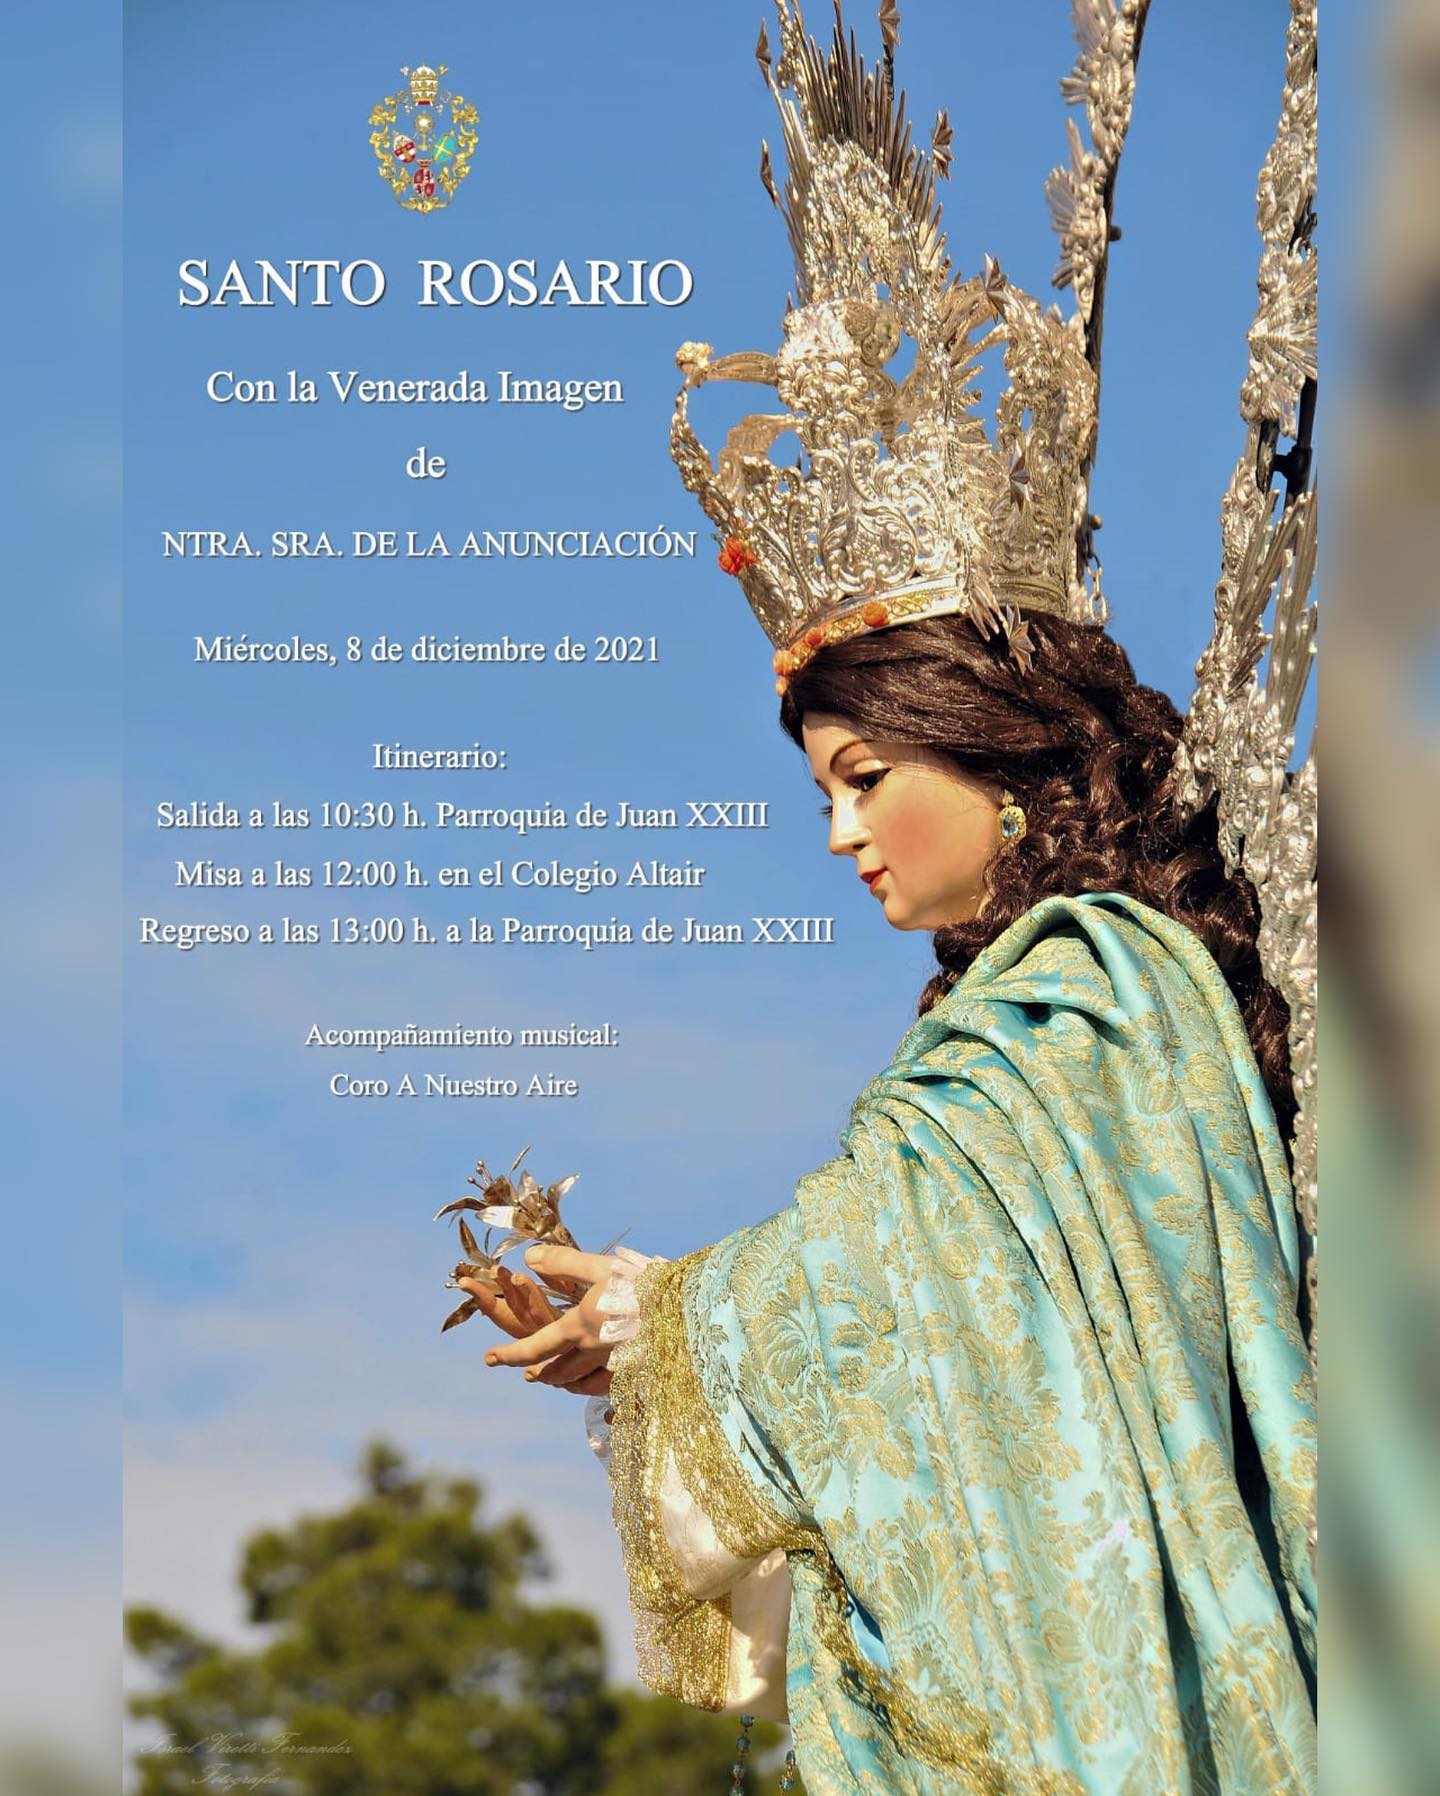 El 8 de diciembre, celebraremos el Santo Rosario por las calles de Juan XXIII.

#gloriasdesevilla #anunciacionjuanxxiii